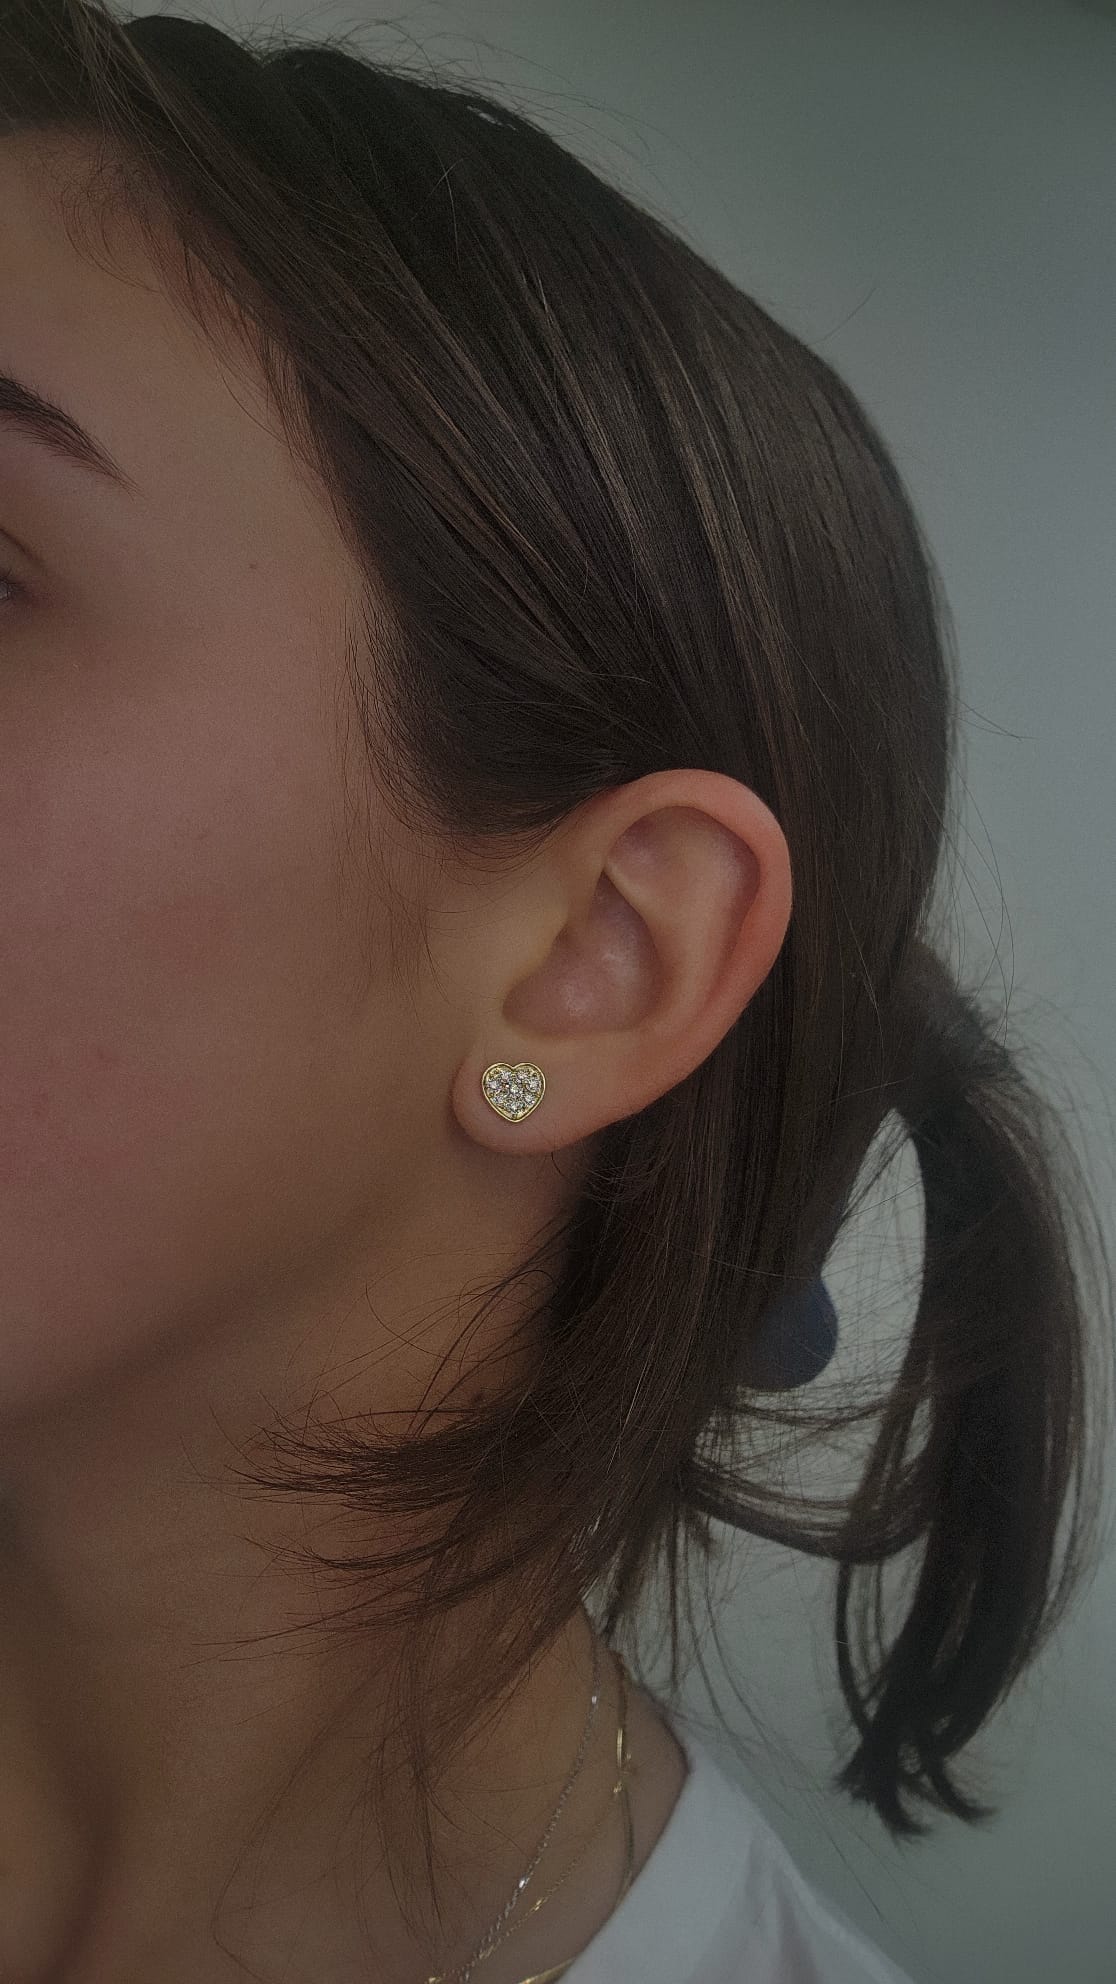 14K Gold Diamond Heart Earrings